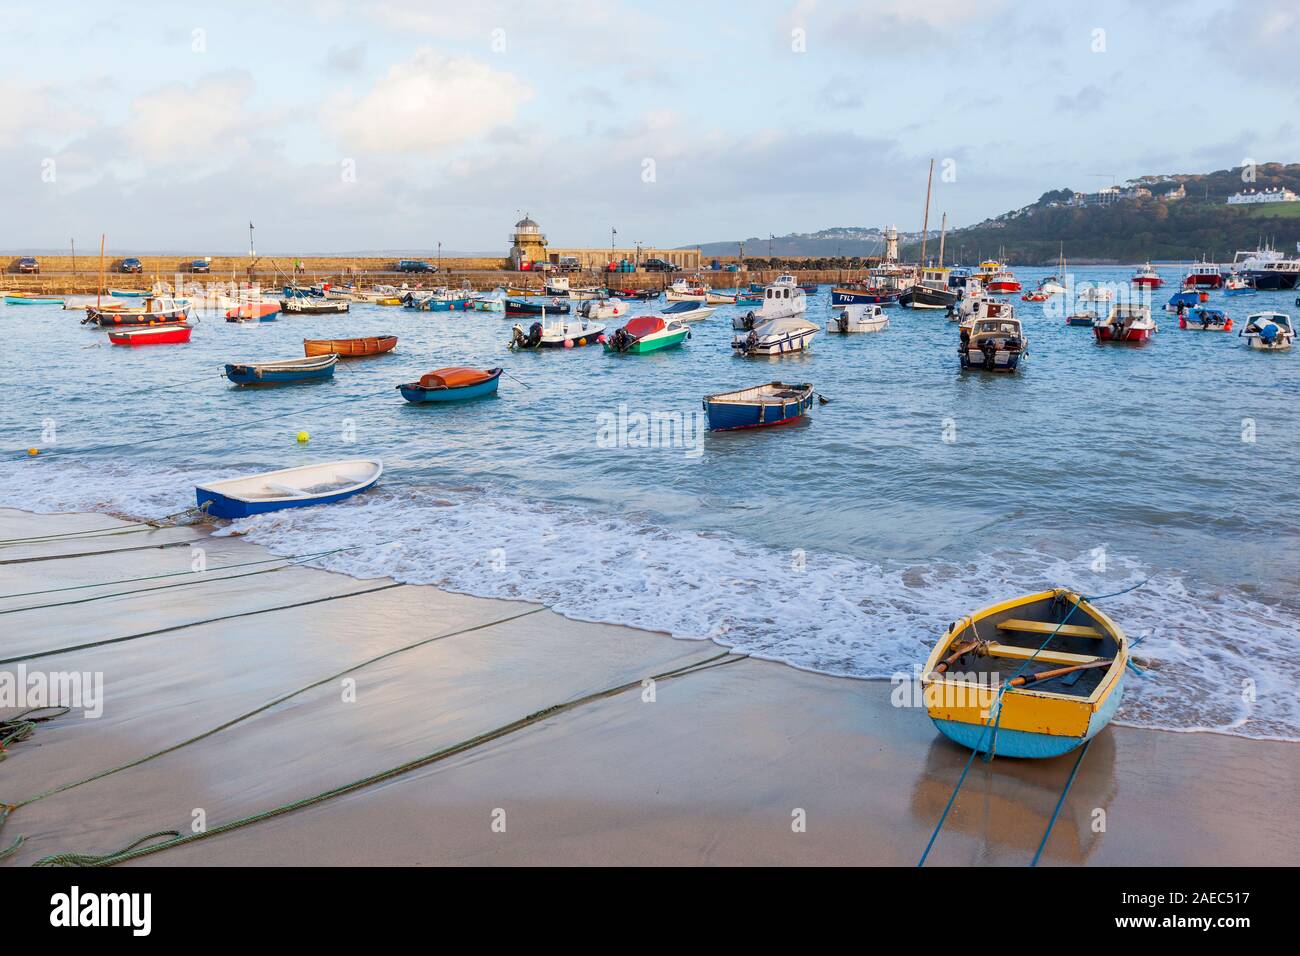 Les petits bateaux amarrés au port de St Ives en Cornouailles, Angleterre, Royaume-Uni. Banque D'Images